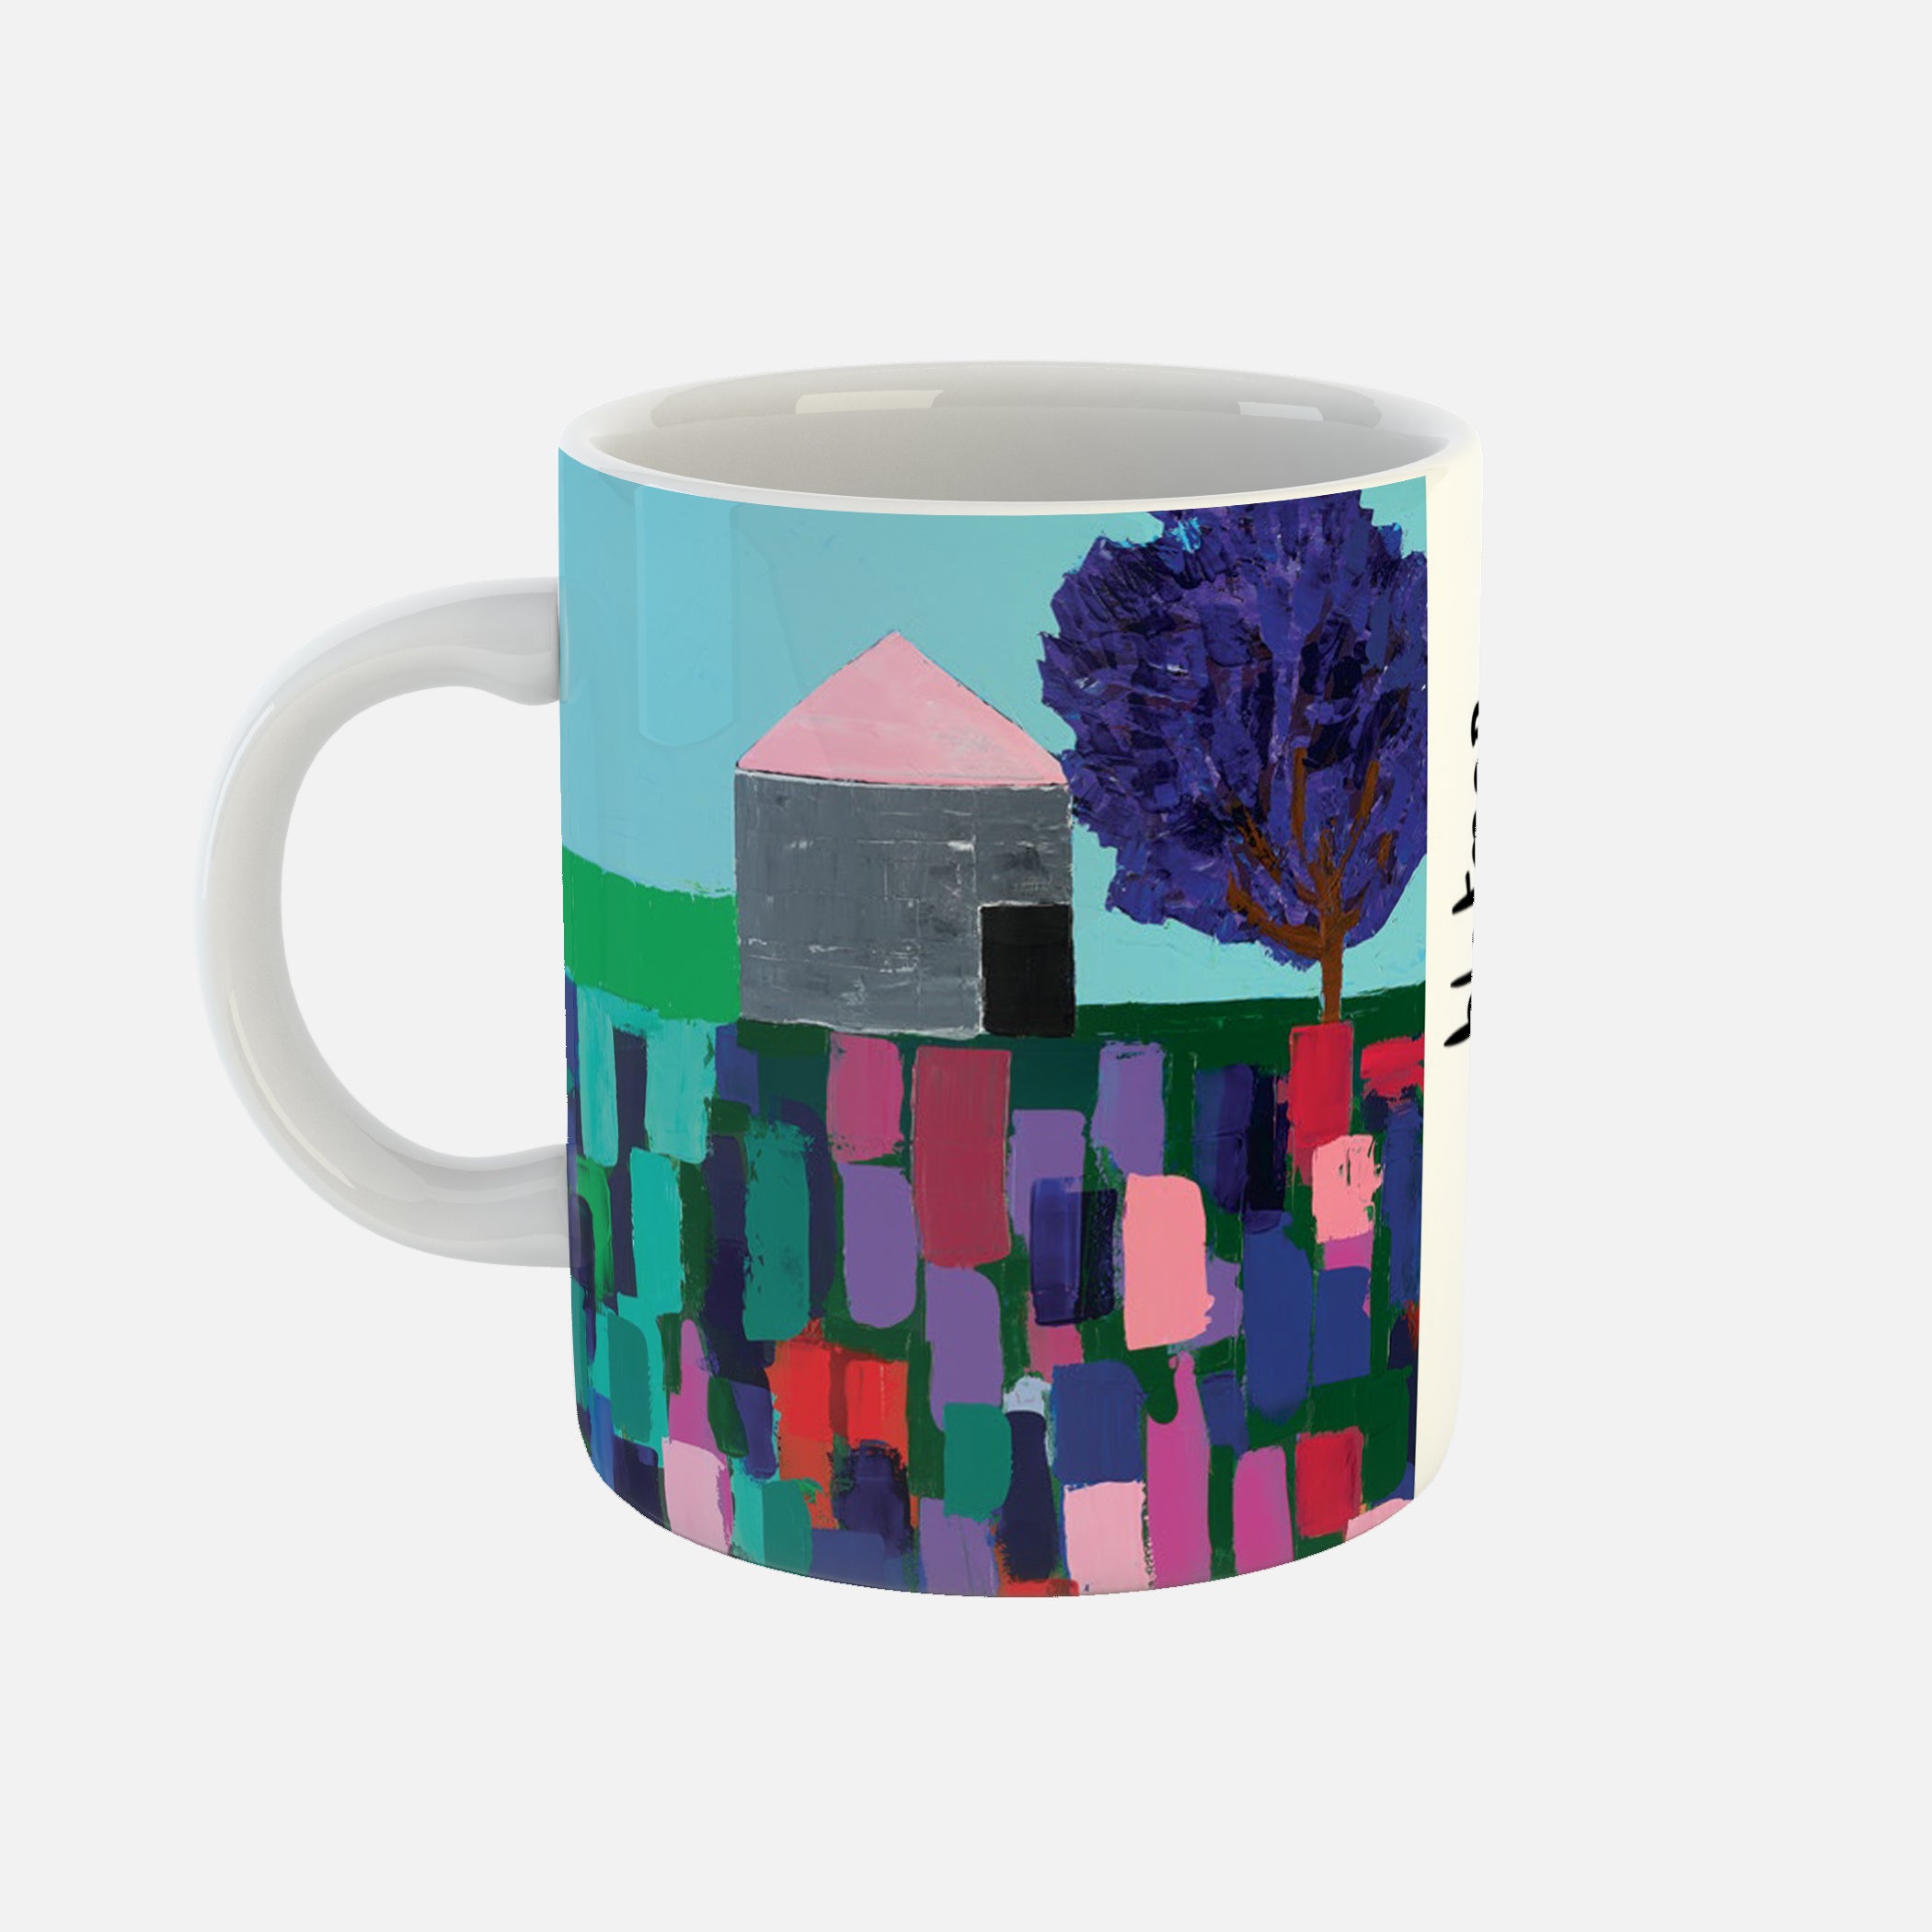 Loch - Ceramic Mug